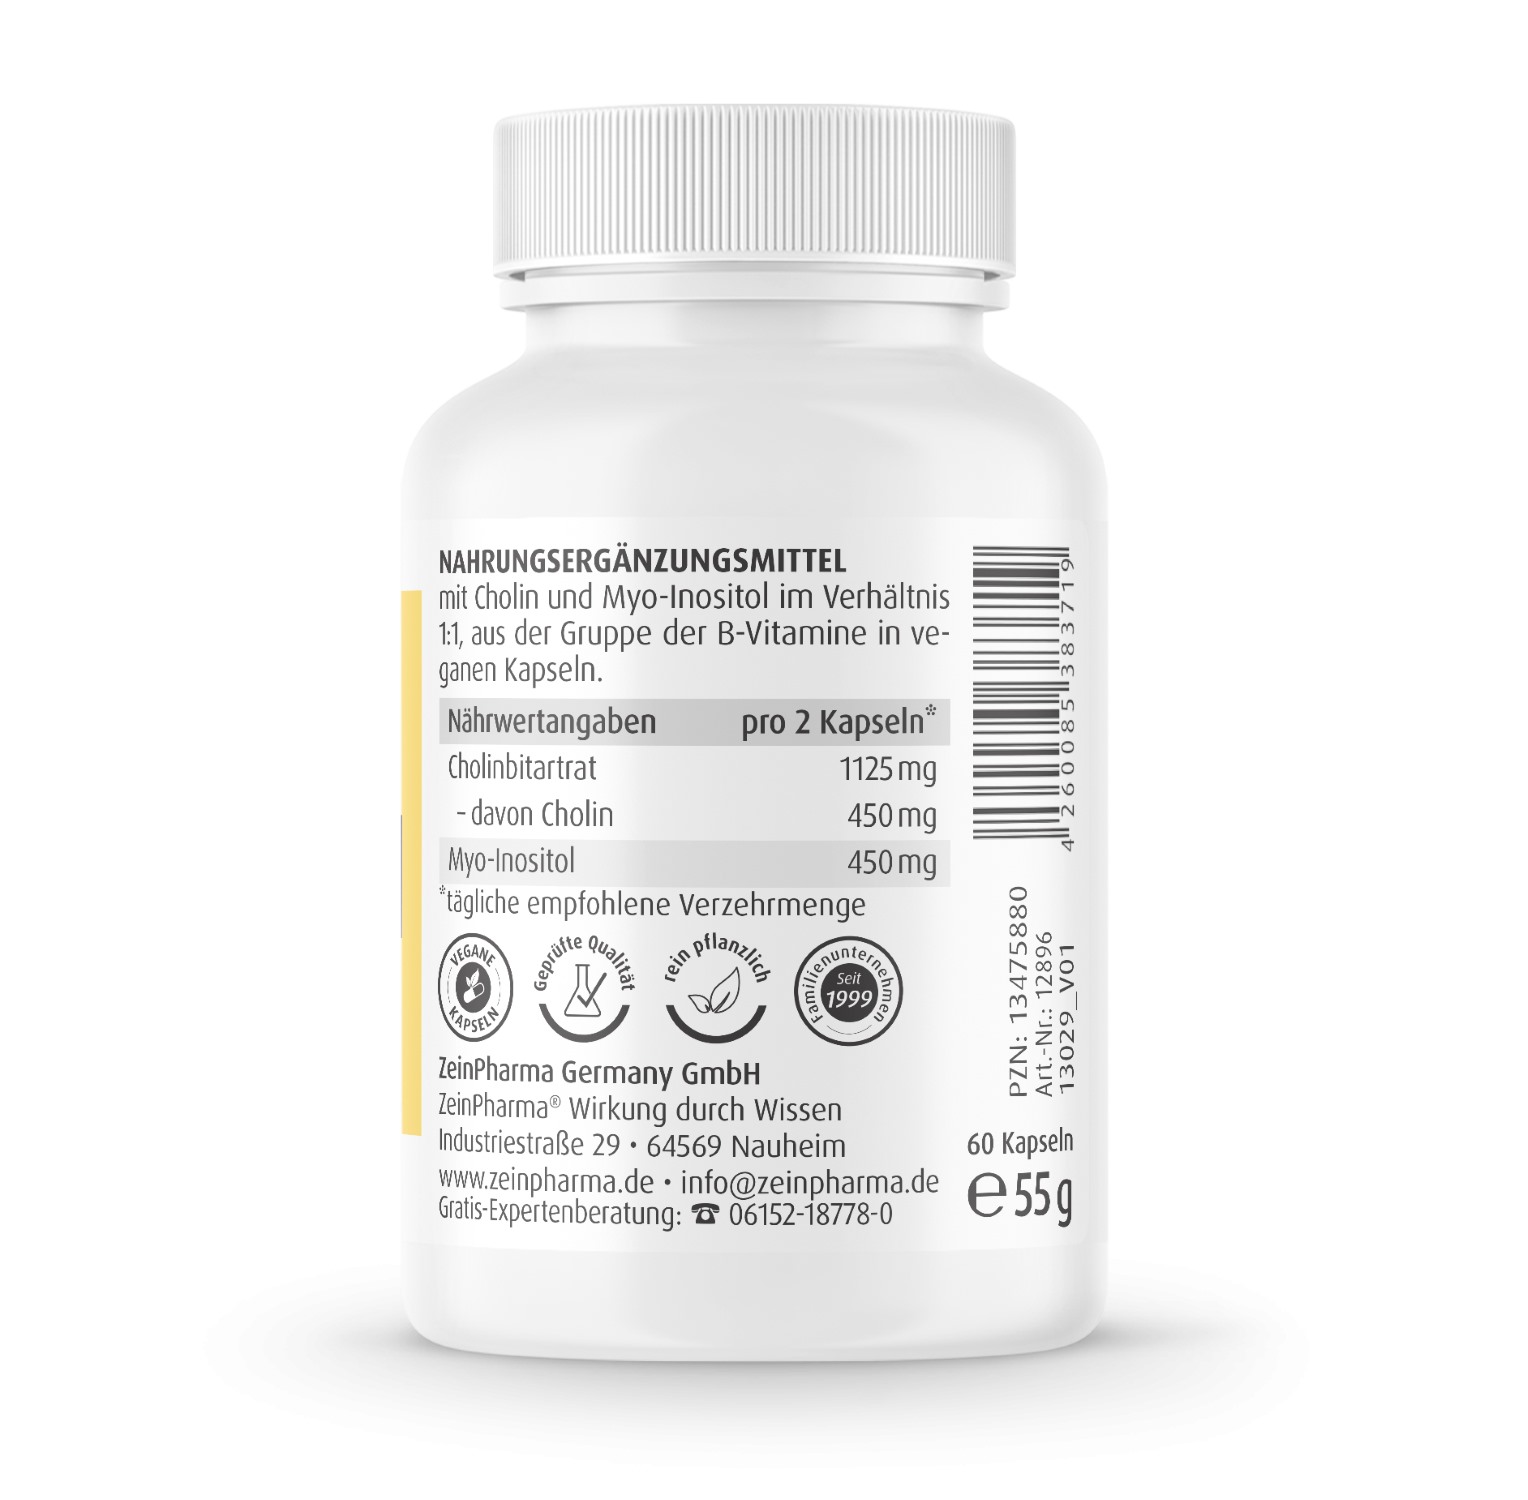 Cholin-Inositol 450/450 mg - 60 Kapseln